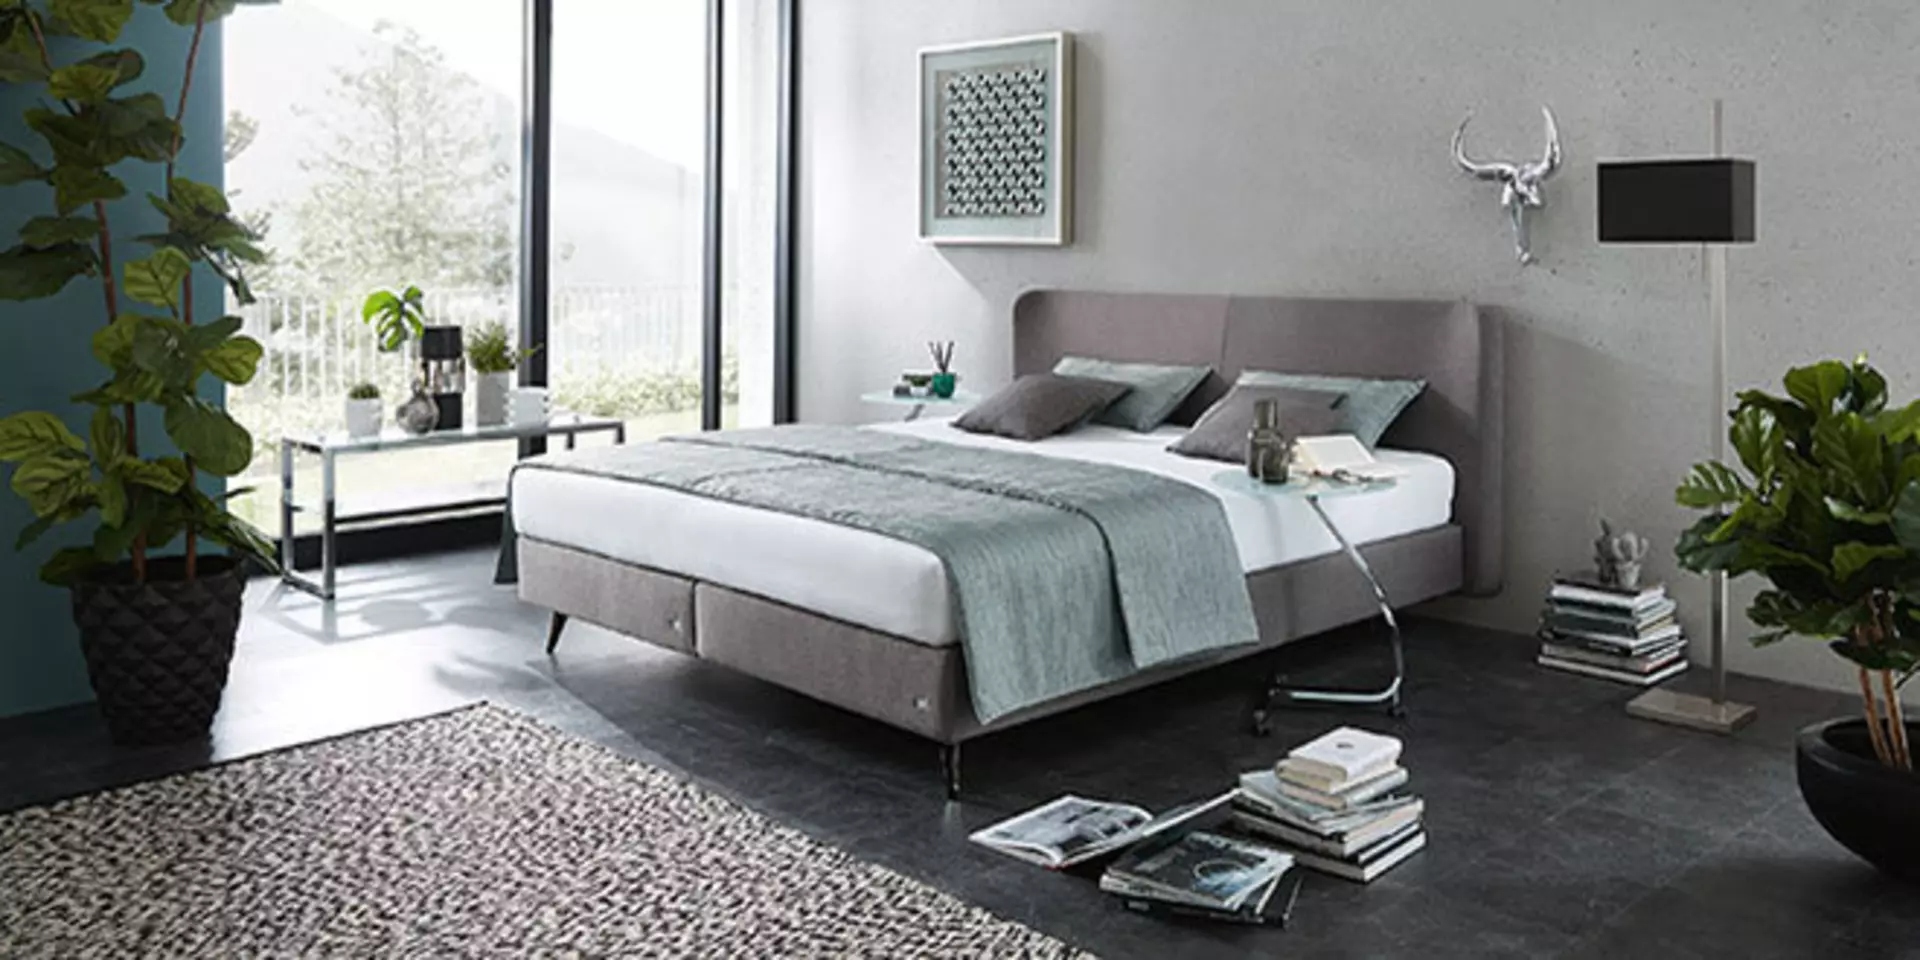 Titelbild der Marke ruf Betten zeigt ein Polsterbett in altrosa.